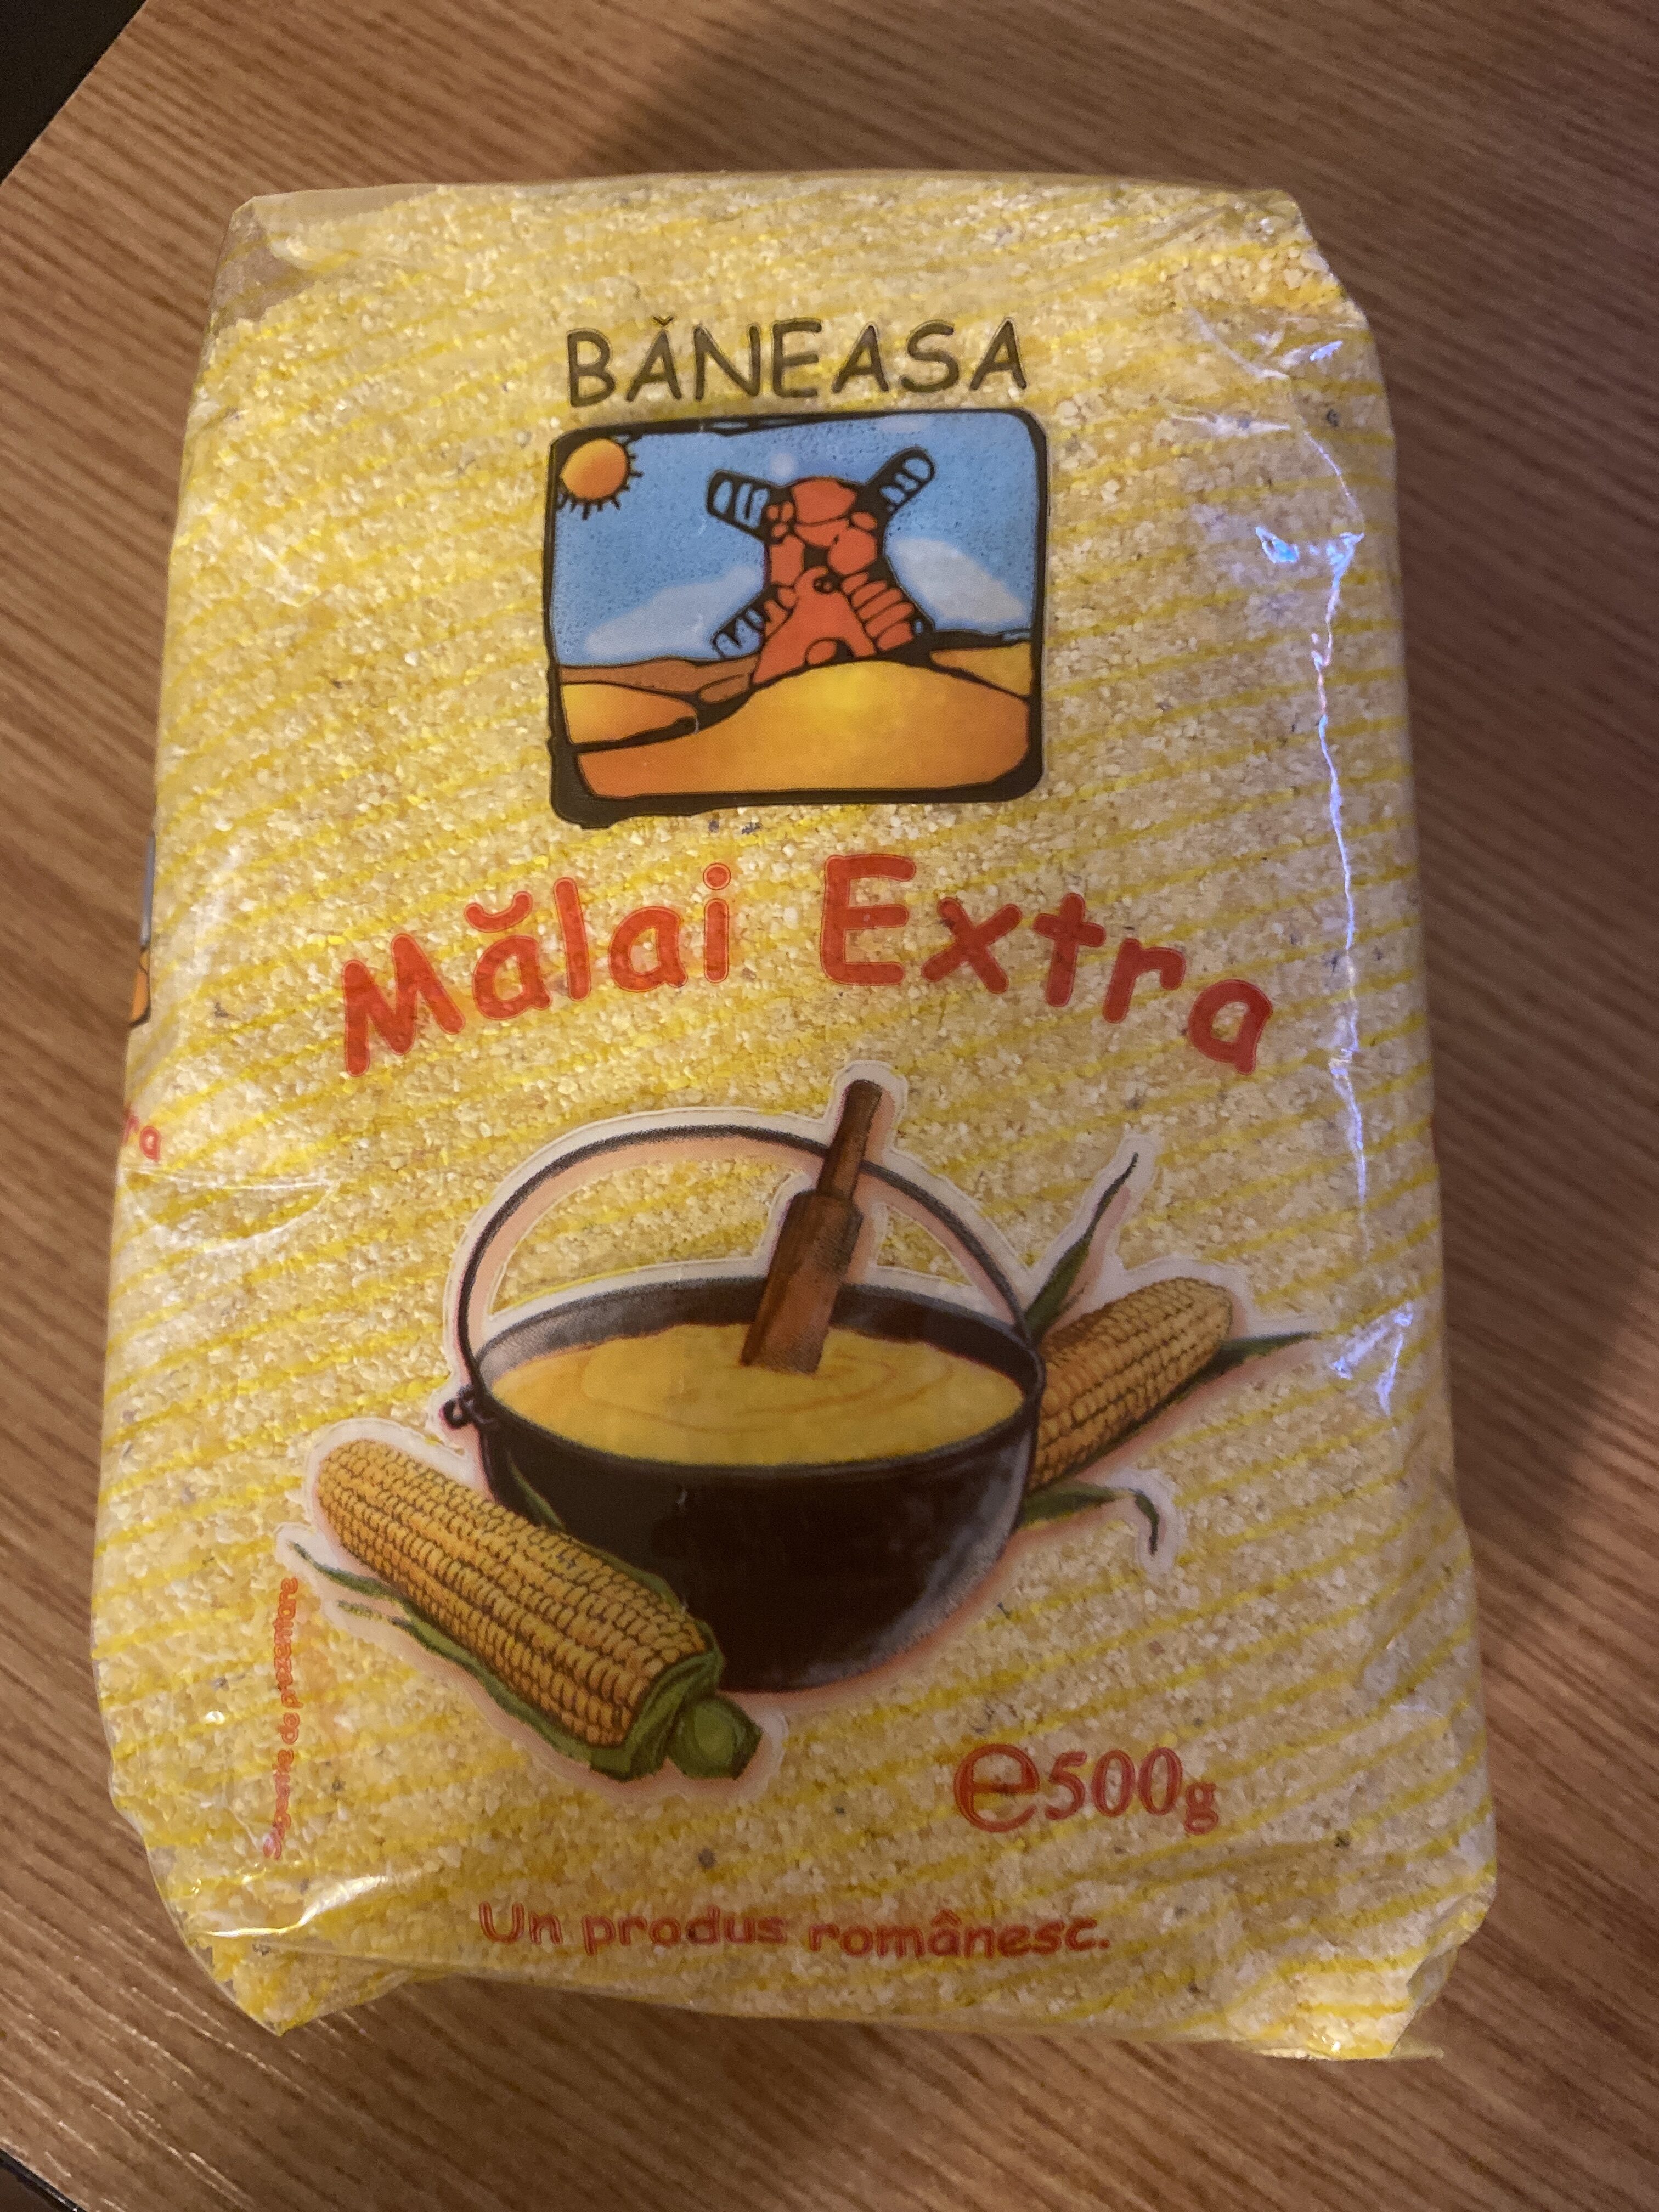 Baneasa Malai Extra - 500g - Product